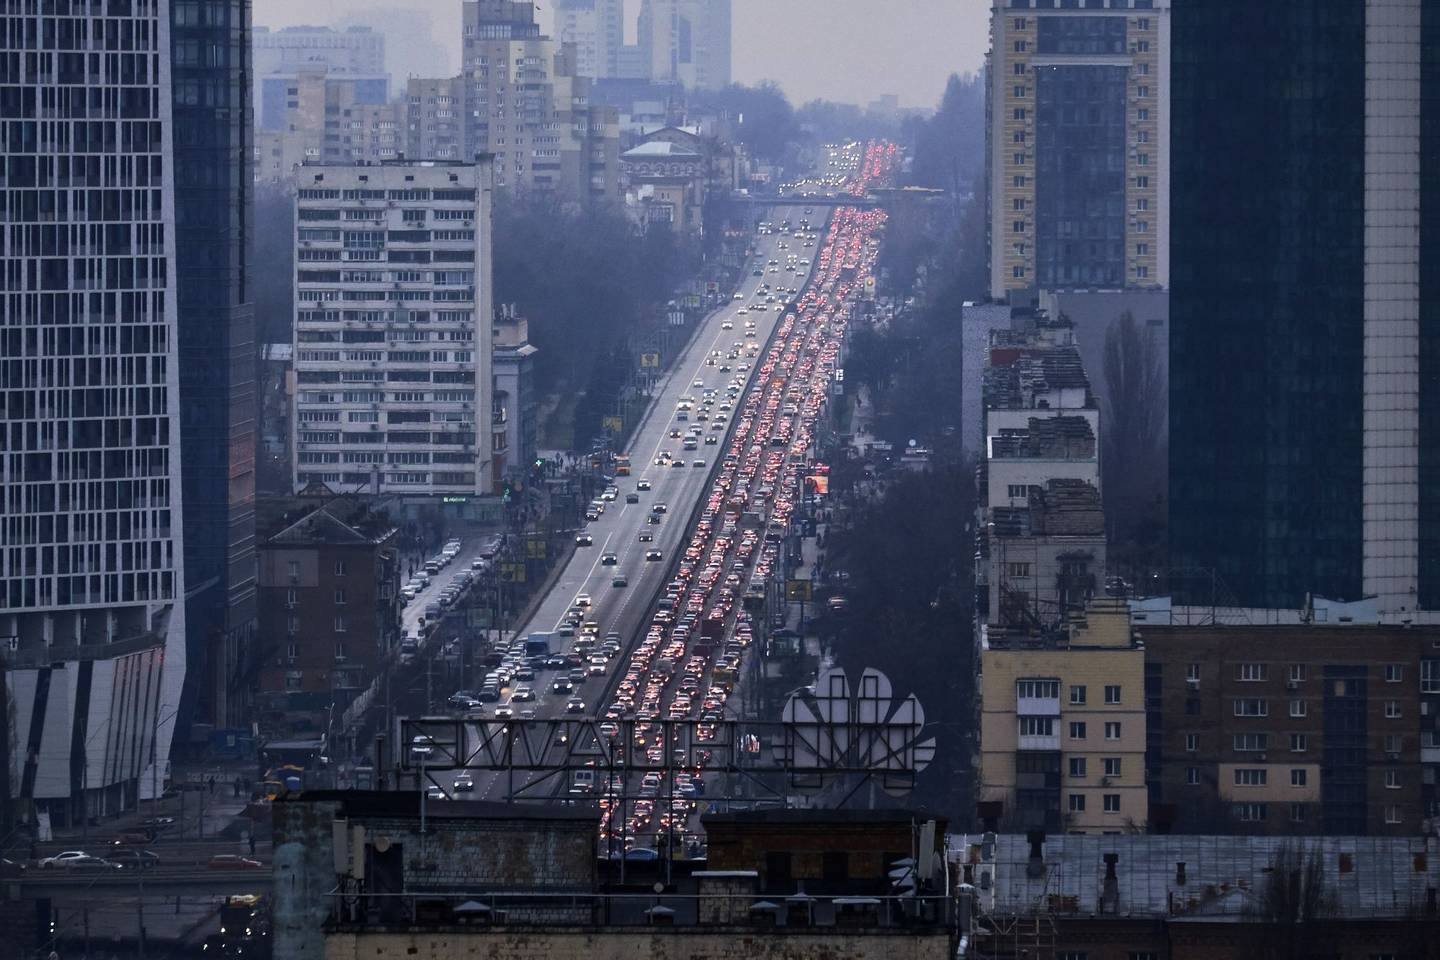 Tráfico intenso a la salida de Kiev, Ucrania, el 24 de febrero.dfd